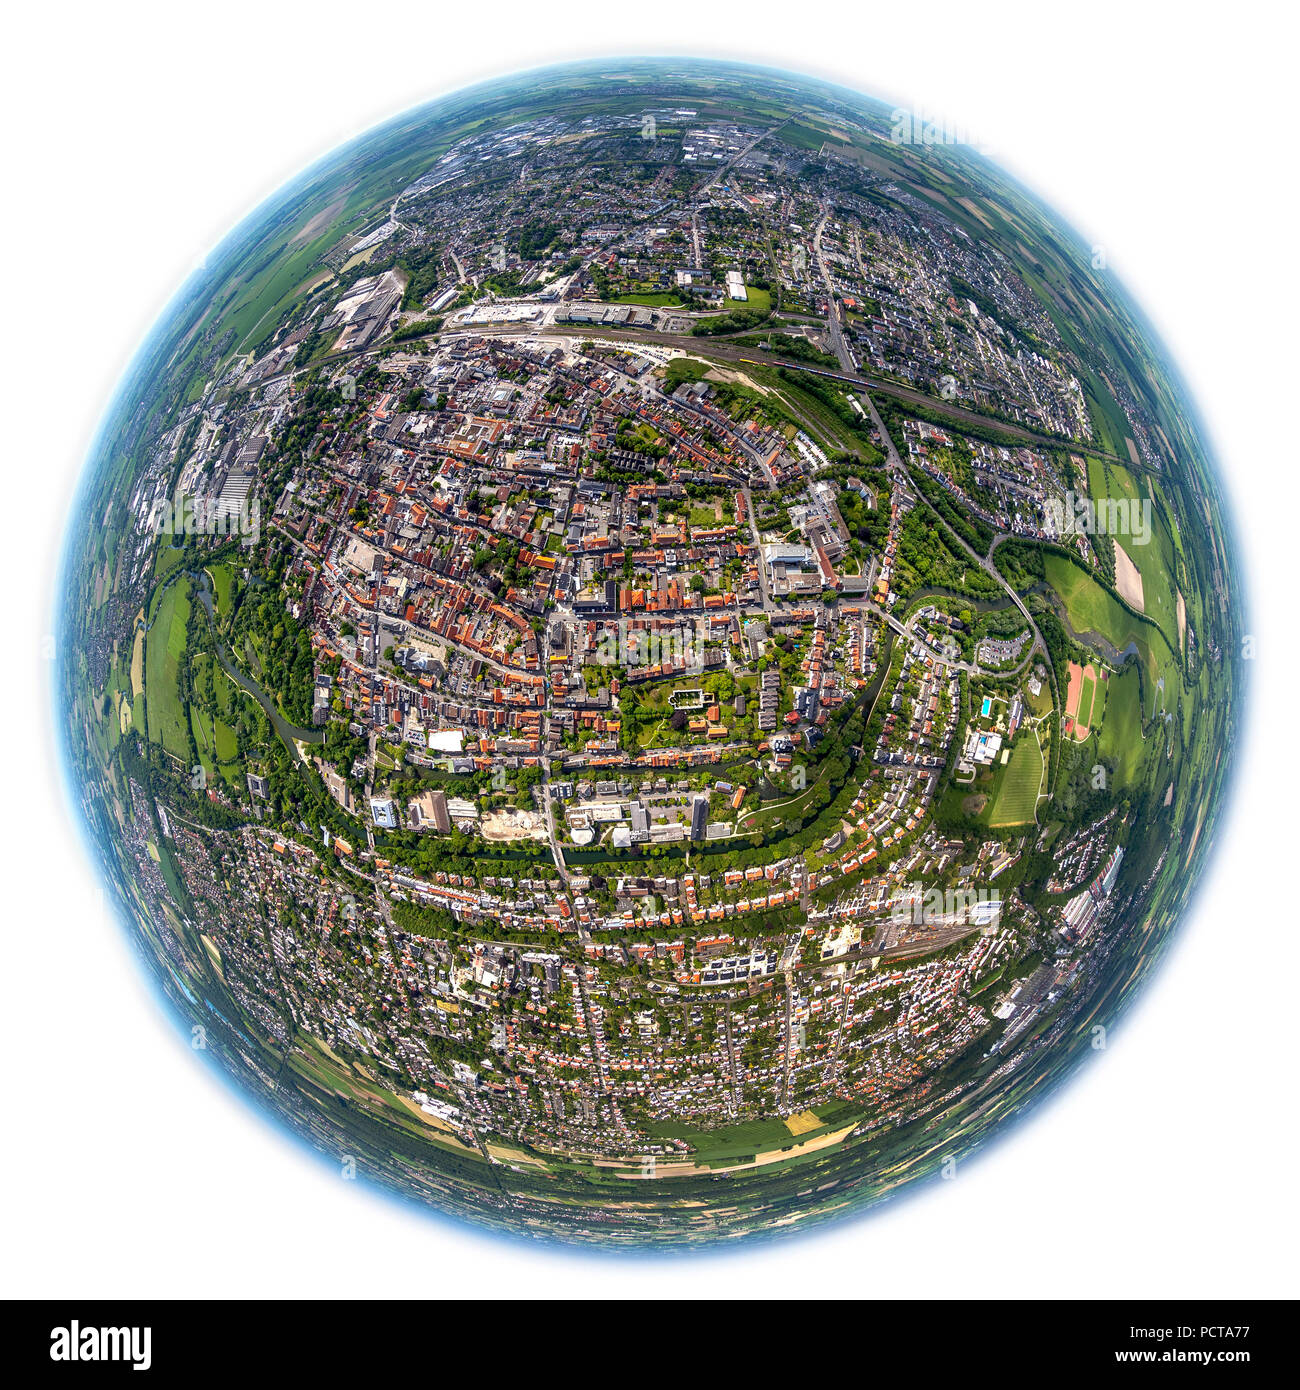 Luftaufnahme, Blick auf das Zentrum von Lippstadt, Fischaugenobjektiv, Lippstadt, Ostwestfalen, NRW, Deutschland Stockfoto